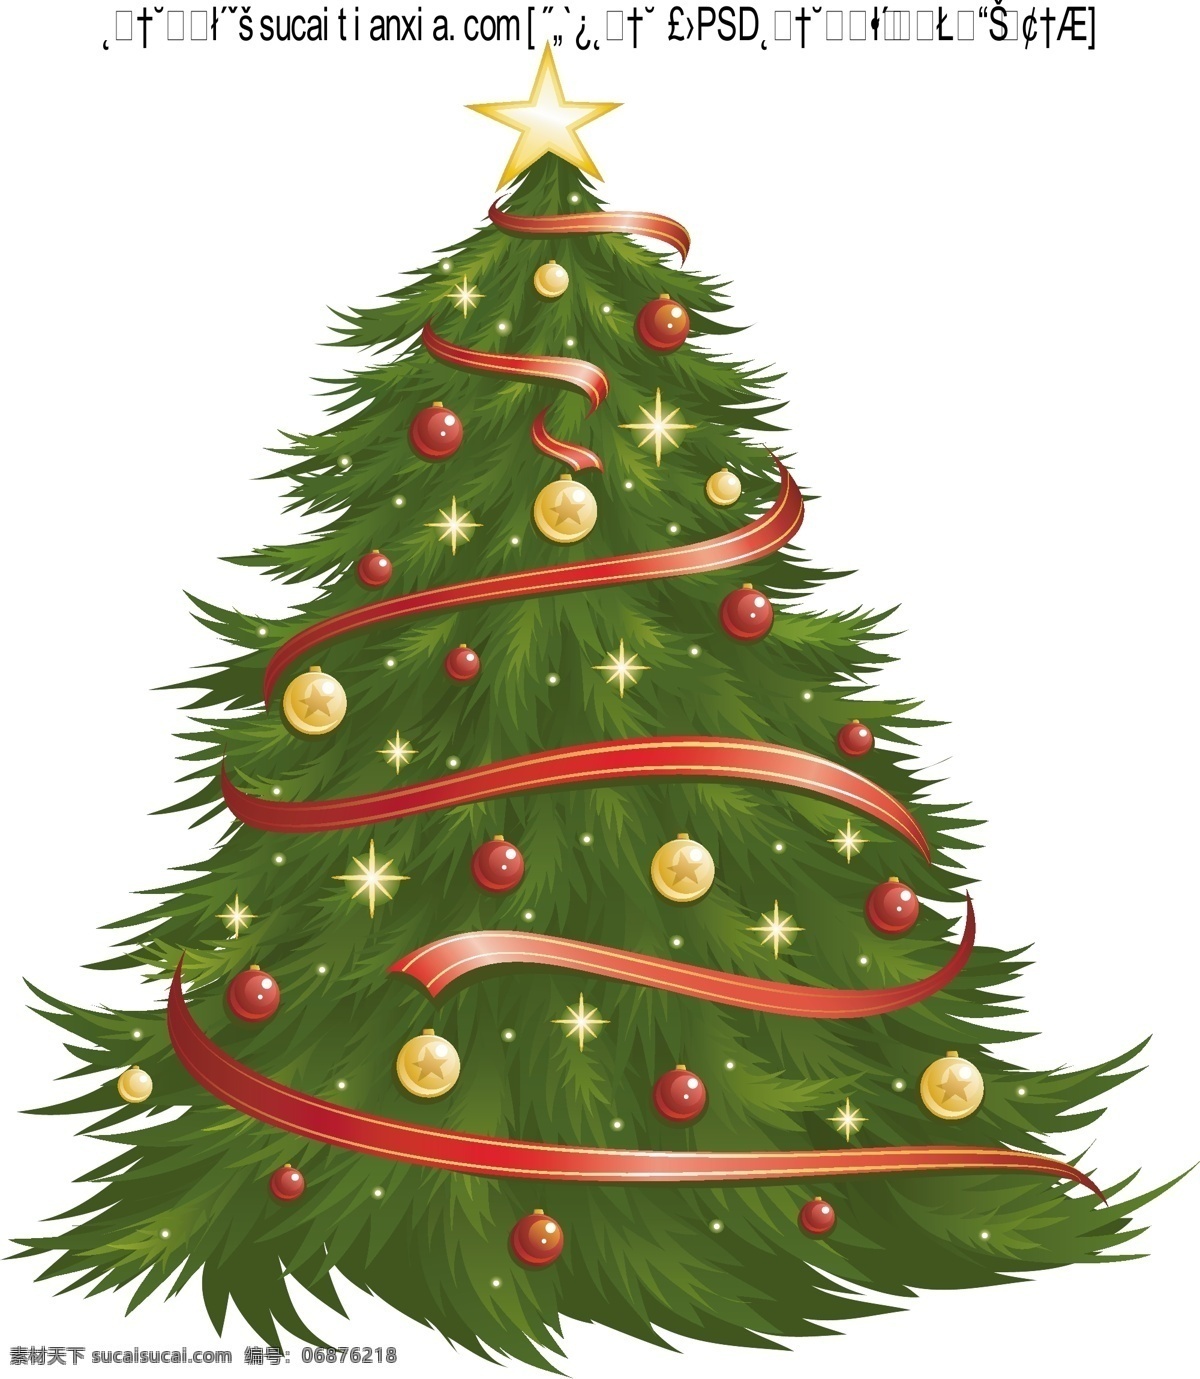 灯光 闪烁 圣诞树 矢量 挂饰 圣诞节装饰 丝带 星星 灯光闪烁 节日素材 其他节日